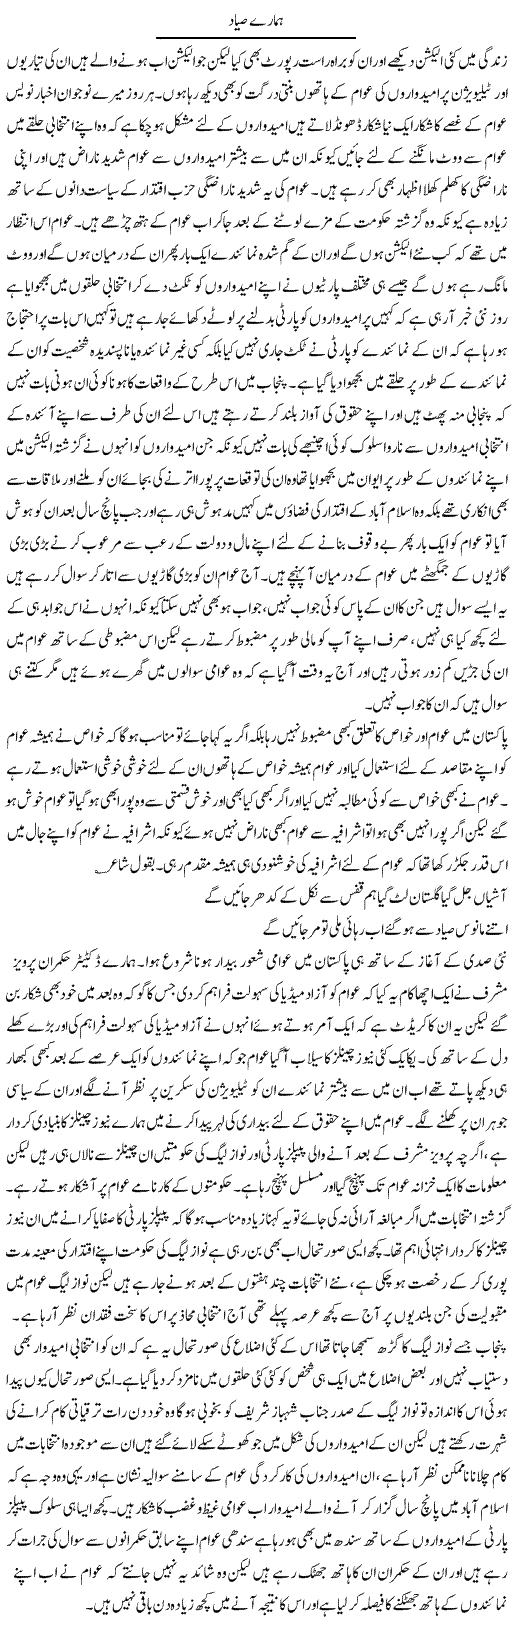 Hamare Sayyad | Abdul Qadir Hassan | Daily Urdu Columns